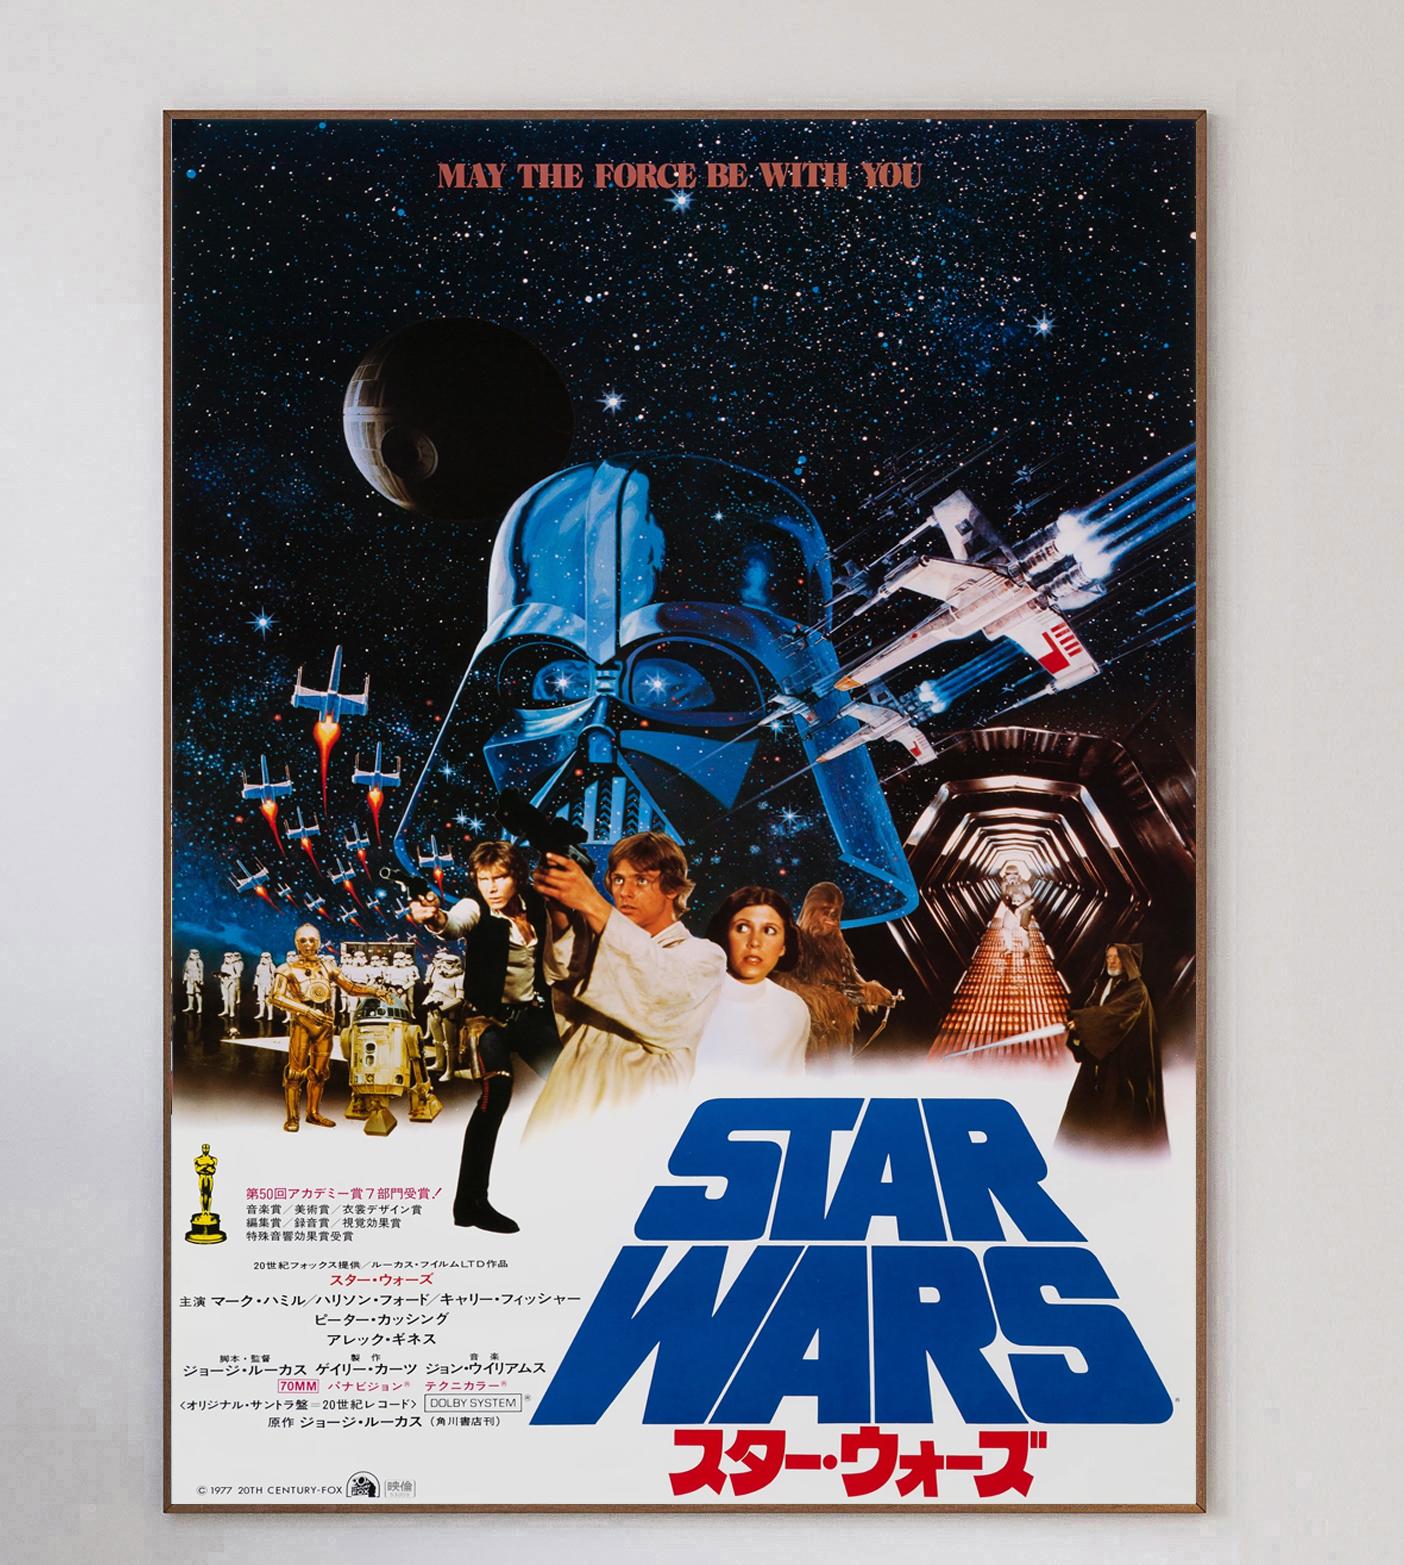 Star Wars (rückwirkend Star Wars: Episode IV - Eine neue Hoffnung genannt) ist ein amerikanisches Weltraum-Opern-Epos aus dem Jahr 1977, geschrieben und inszeniert von George Lucas, produziert von Lucasfilm und vertrieben von 20th Century-Fox. Es